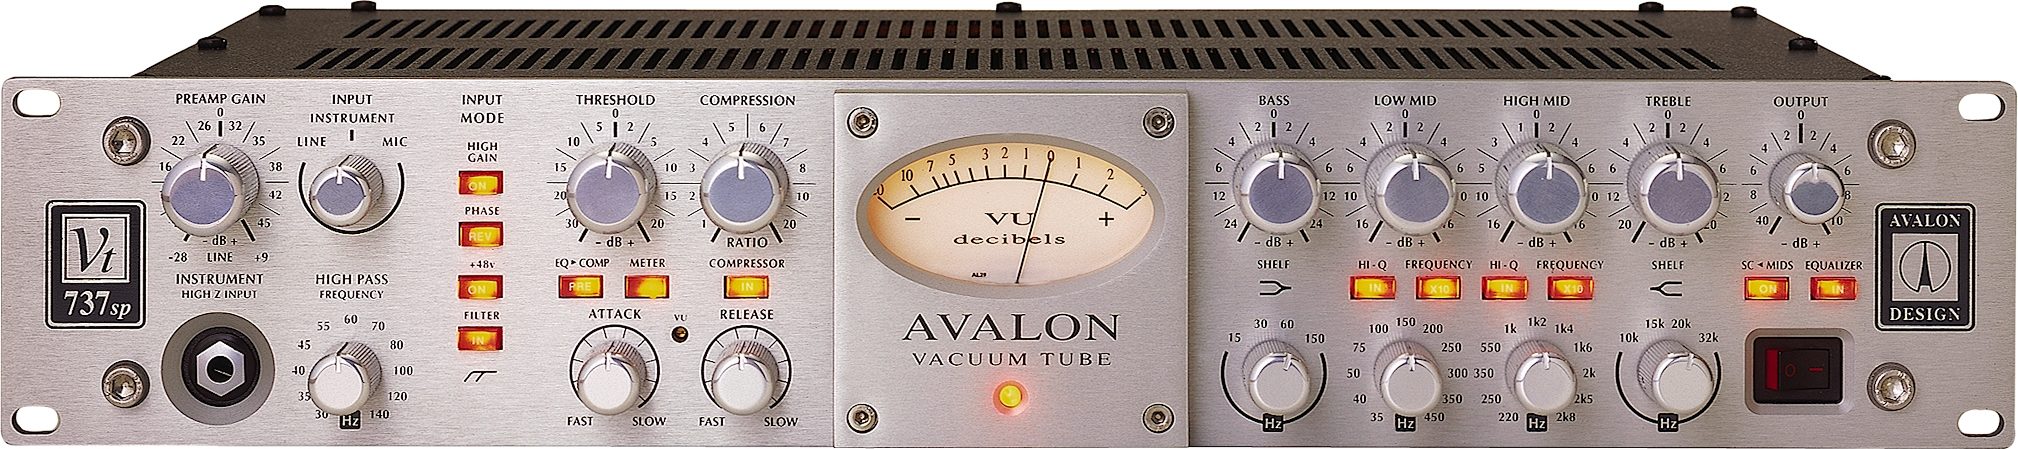 Guau o... vaya: El aspecto arrebatador de Avalon VT-737SP sirve como antesala de un sonido de enorme altura (no digamos ya sus posibilidades)